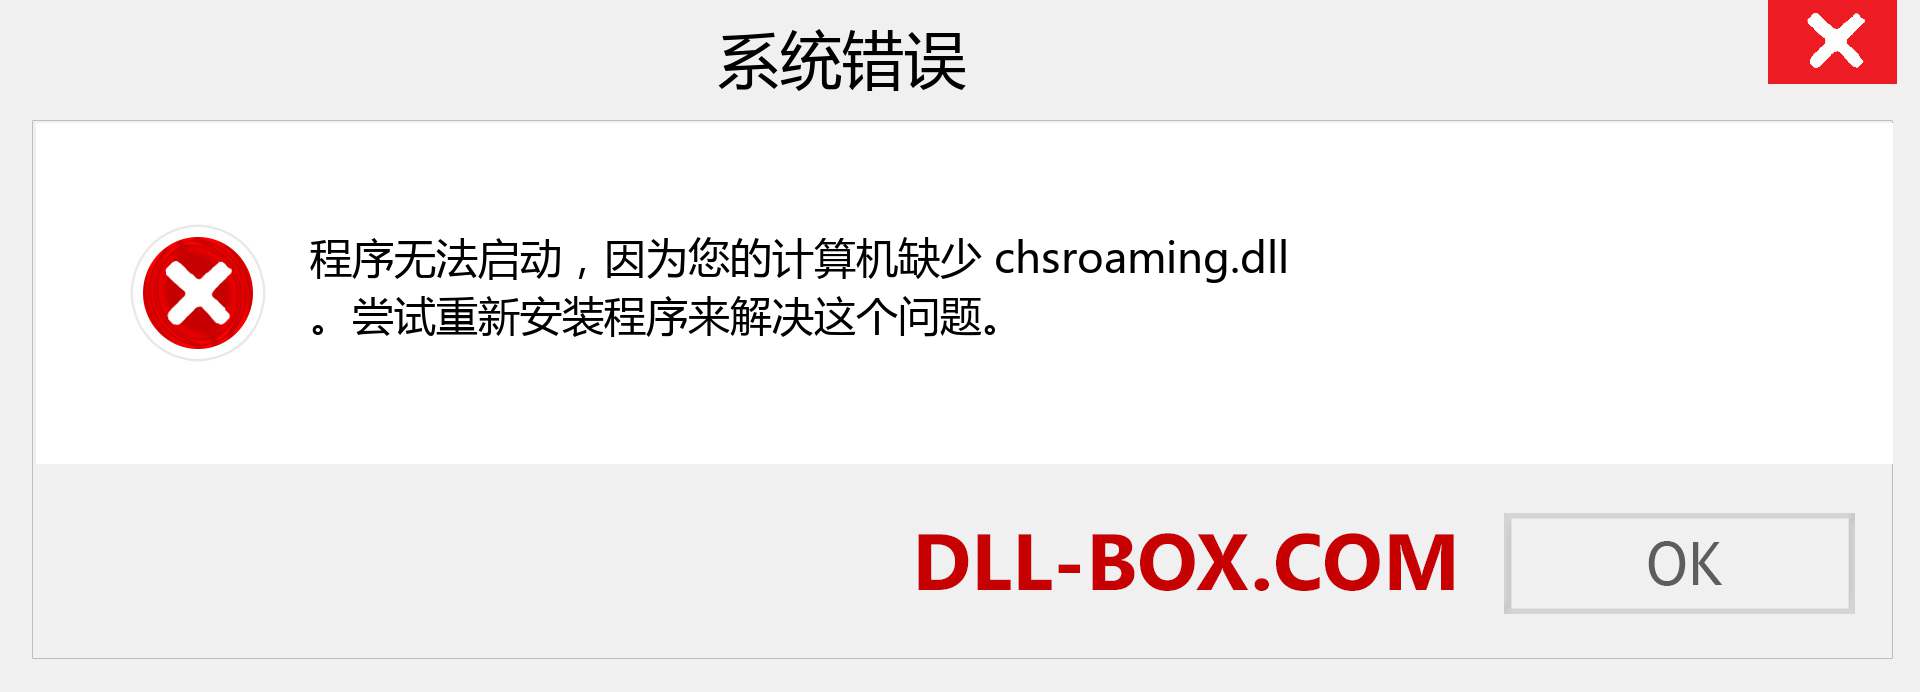 chsroaming.dll 文件丢失？。 适用于 Windows 7、8、10 的下载 - 修复 Windows、照片、图像上的 chsroaming dll 丢失错误